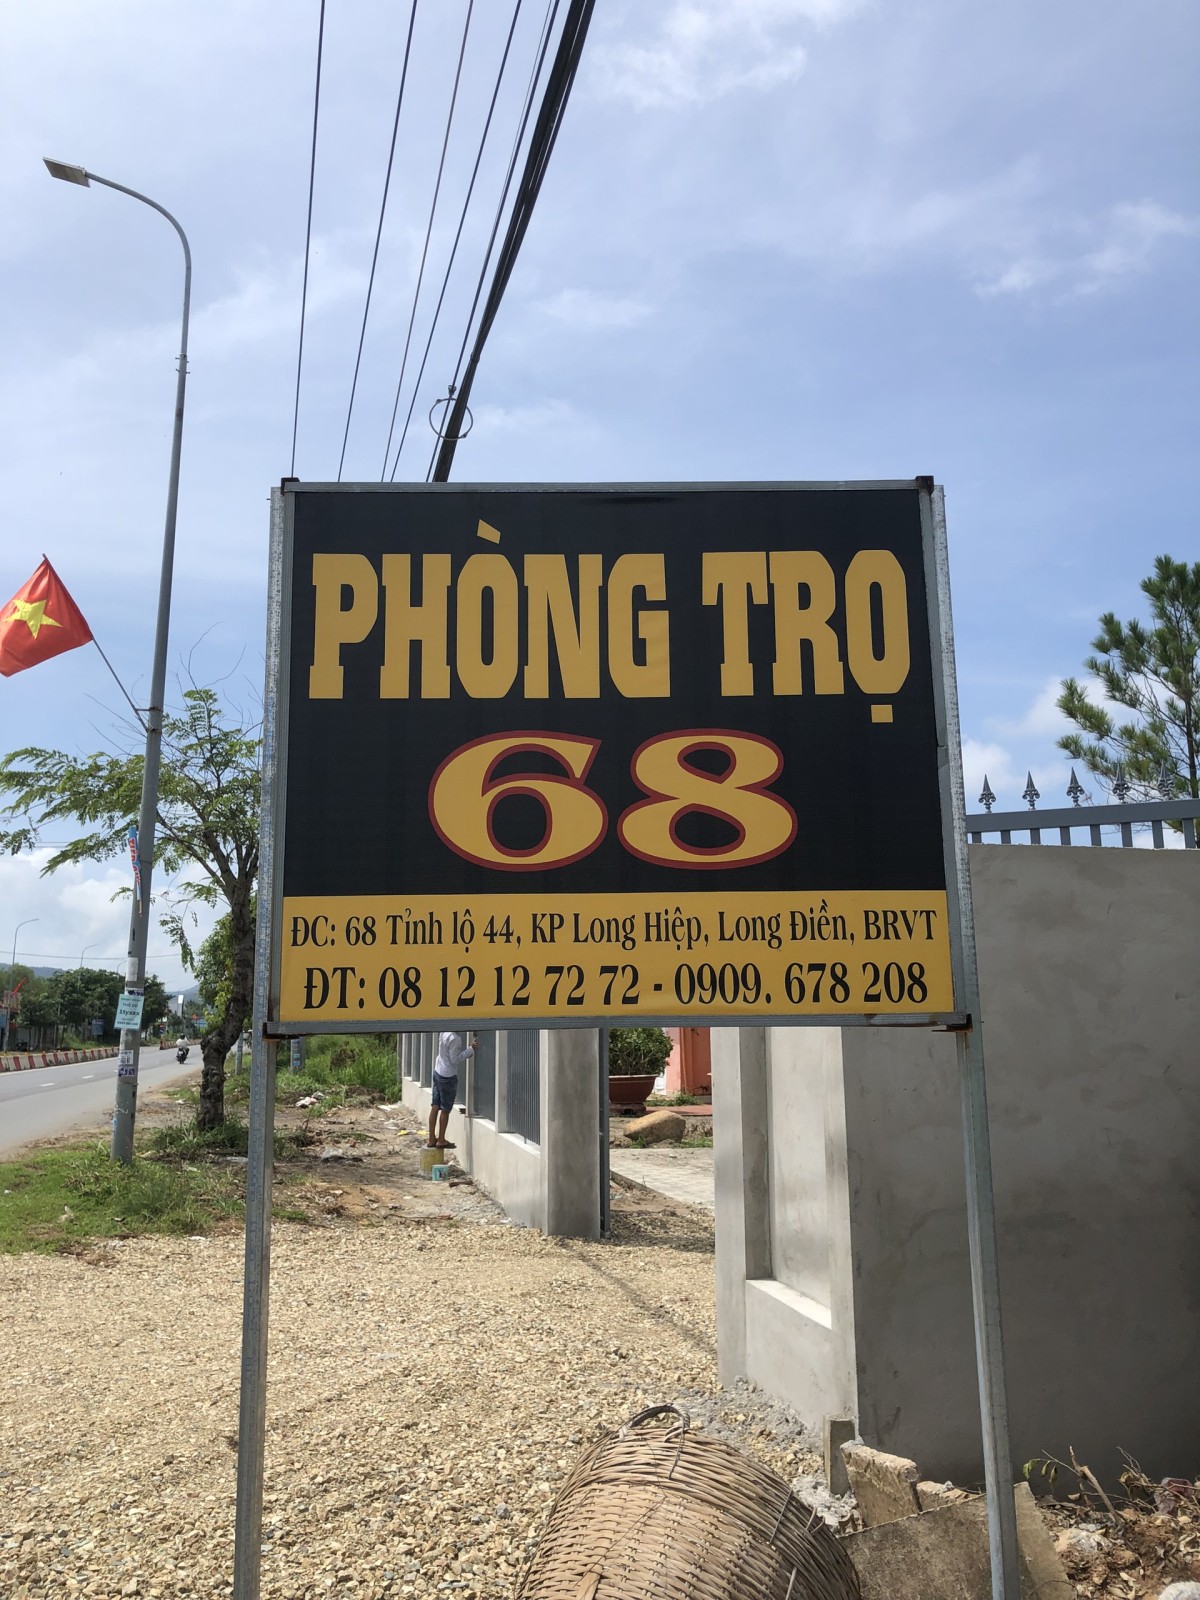 PHÒNG TRỌ 68 – Hệ thống phòng trọ giá rẻ khu vực Long Điền, BRVT.